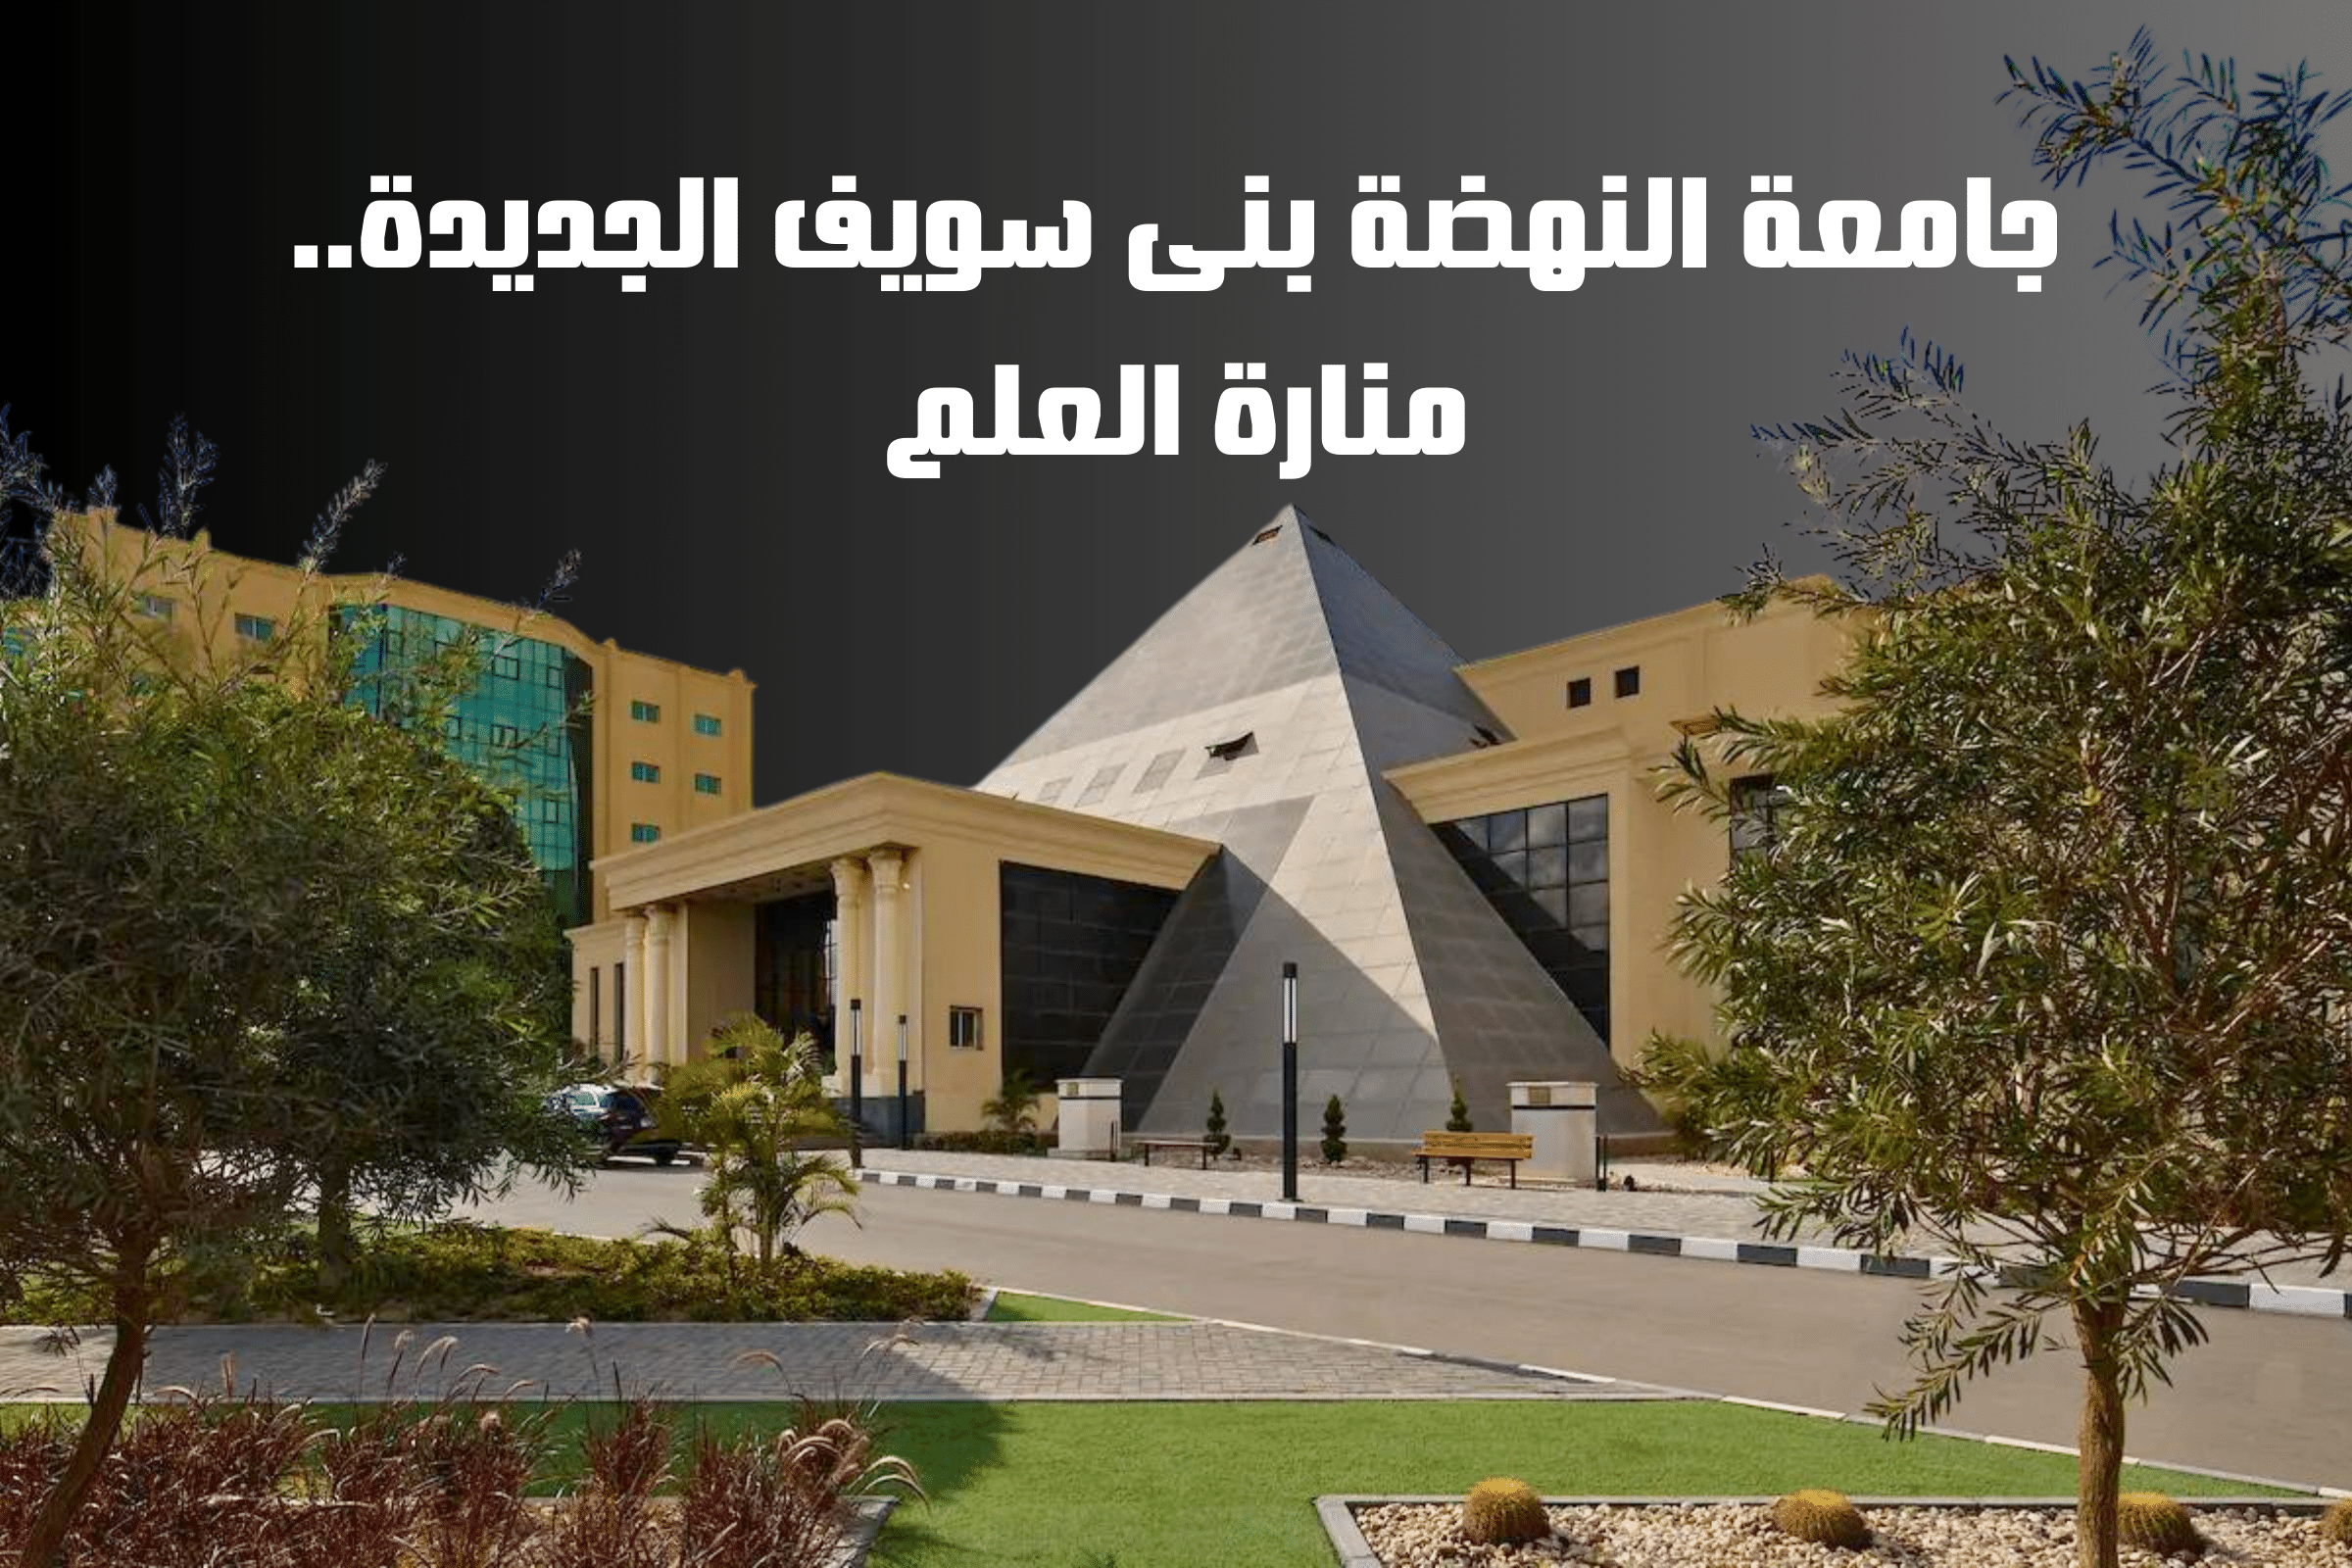 جامعة النهضة بنى سويف الجديدة.. منارة العلم